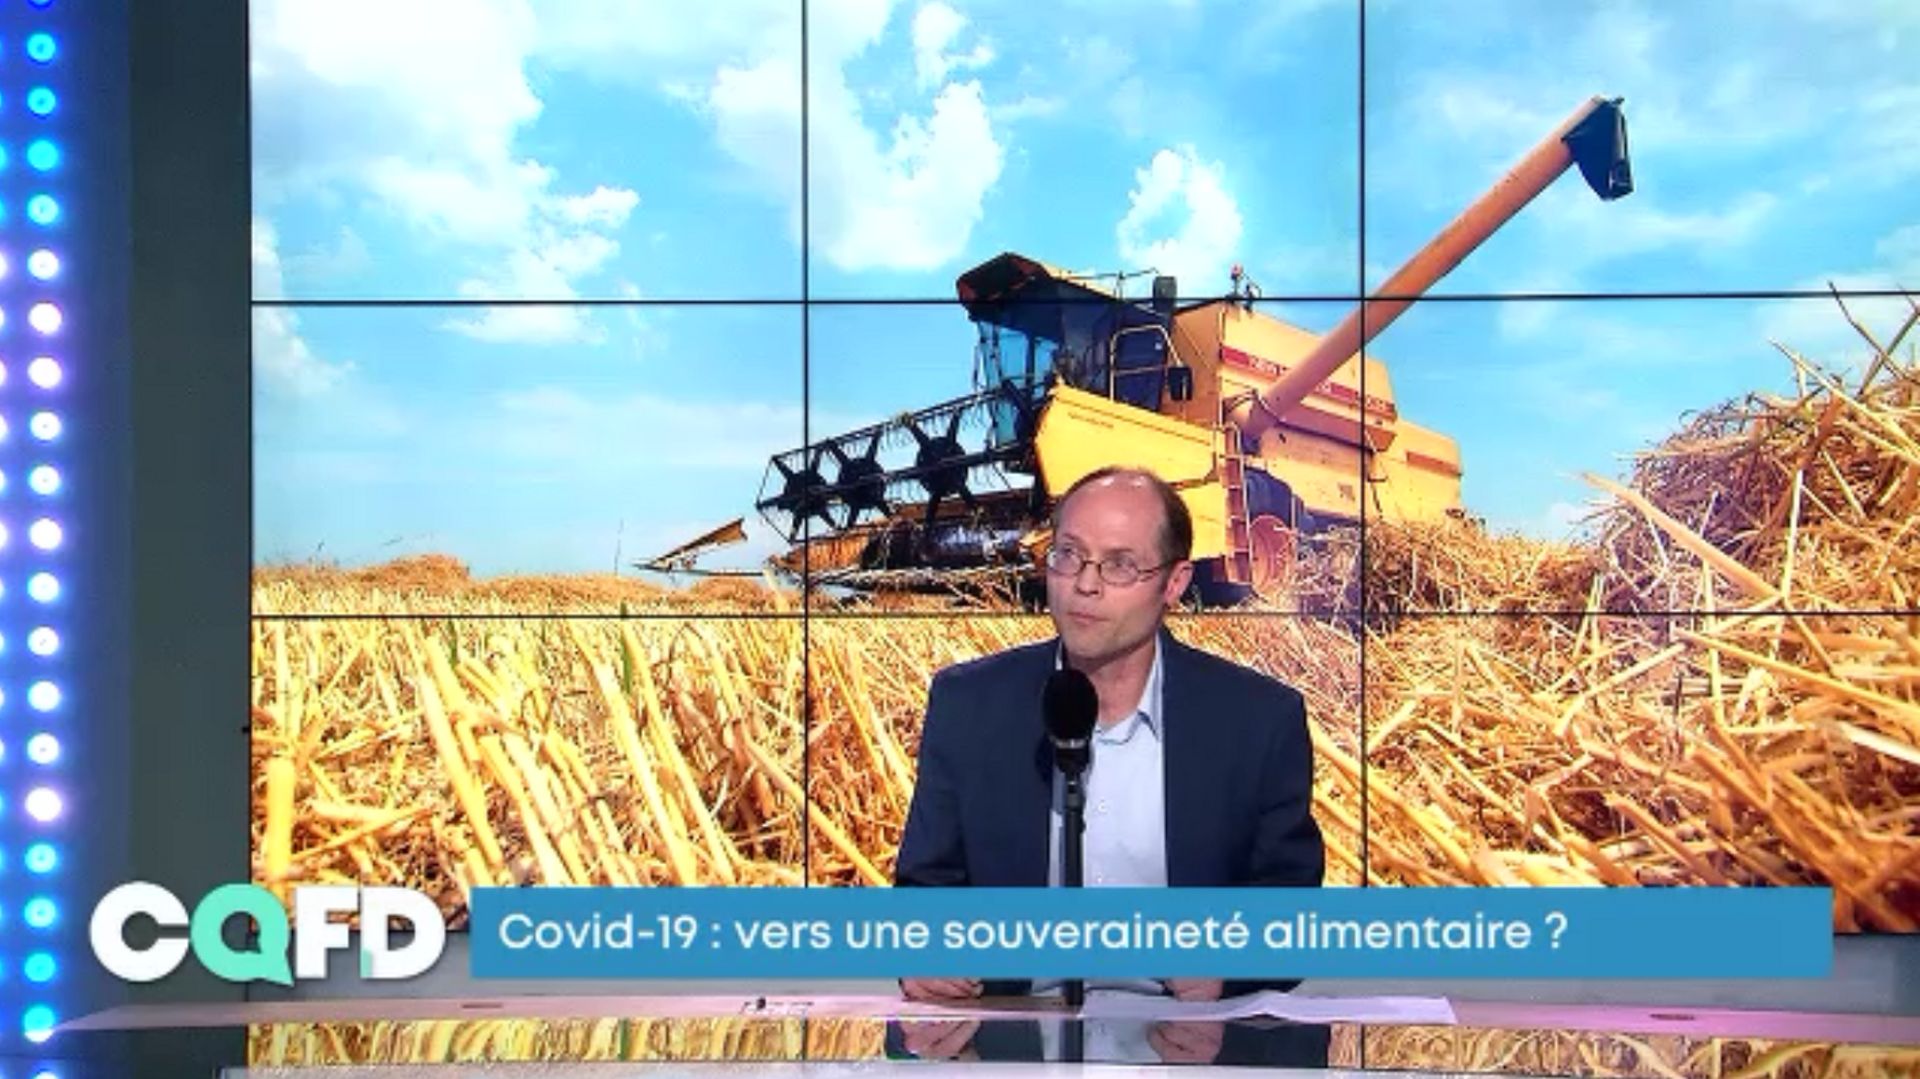 Olivier De Schutter : "Les conséquences alimentaires de la crise actuelle sont dans l'angle mort"